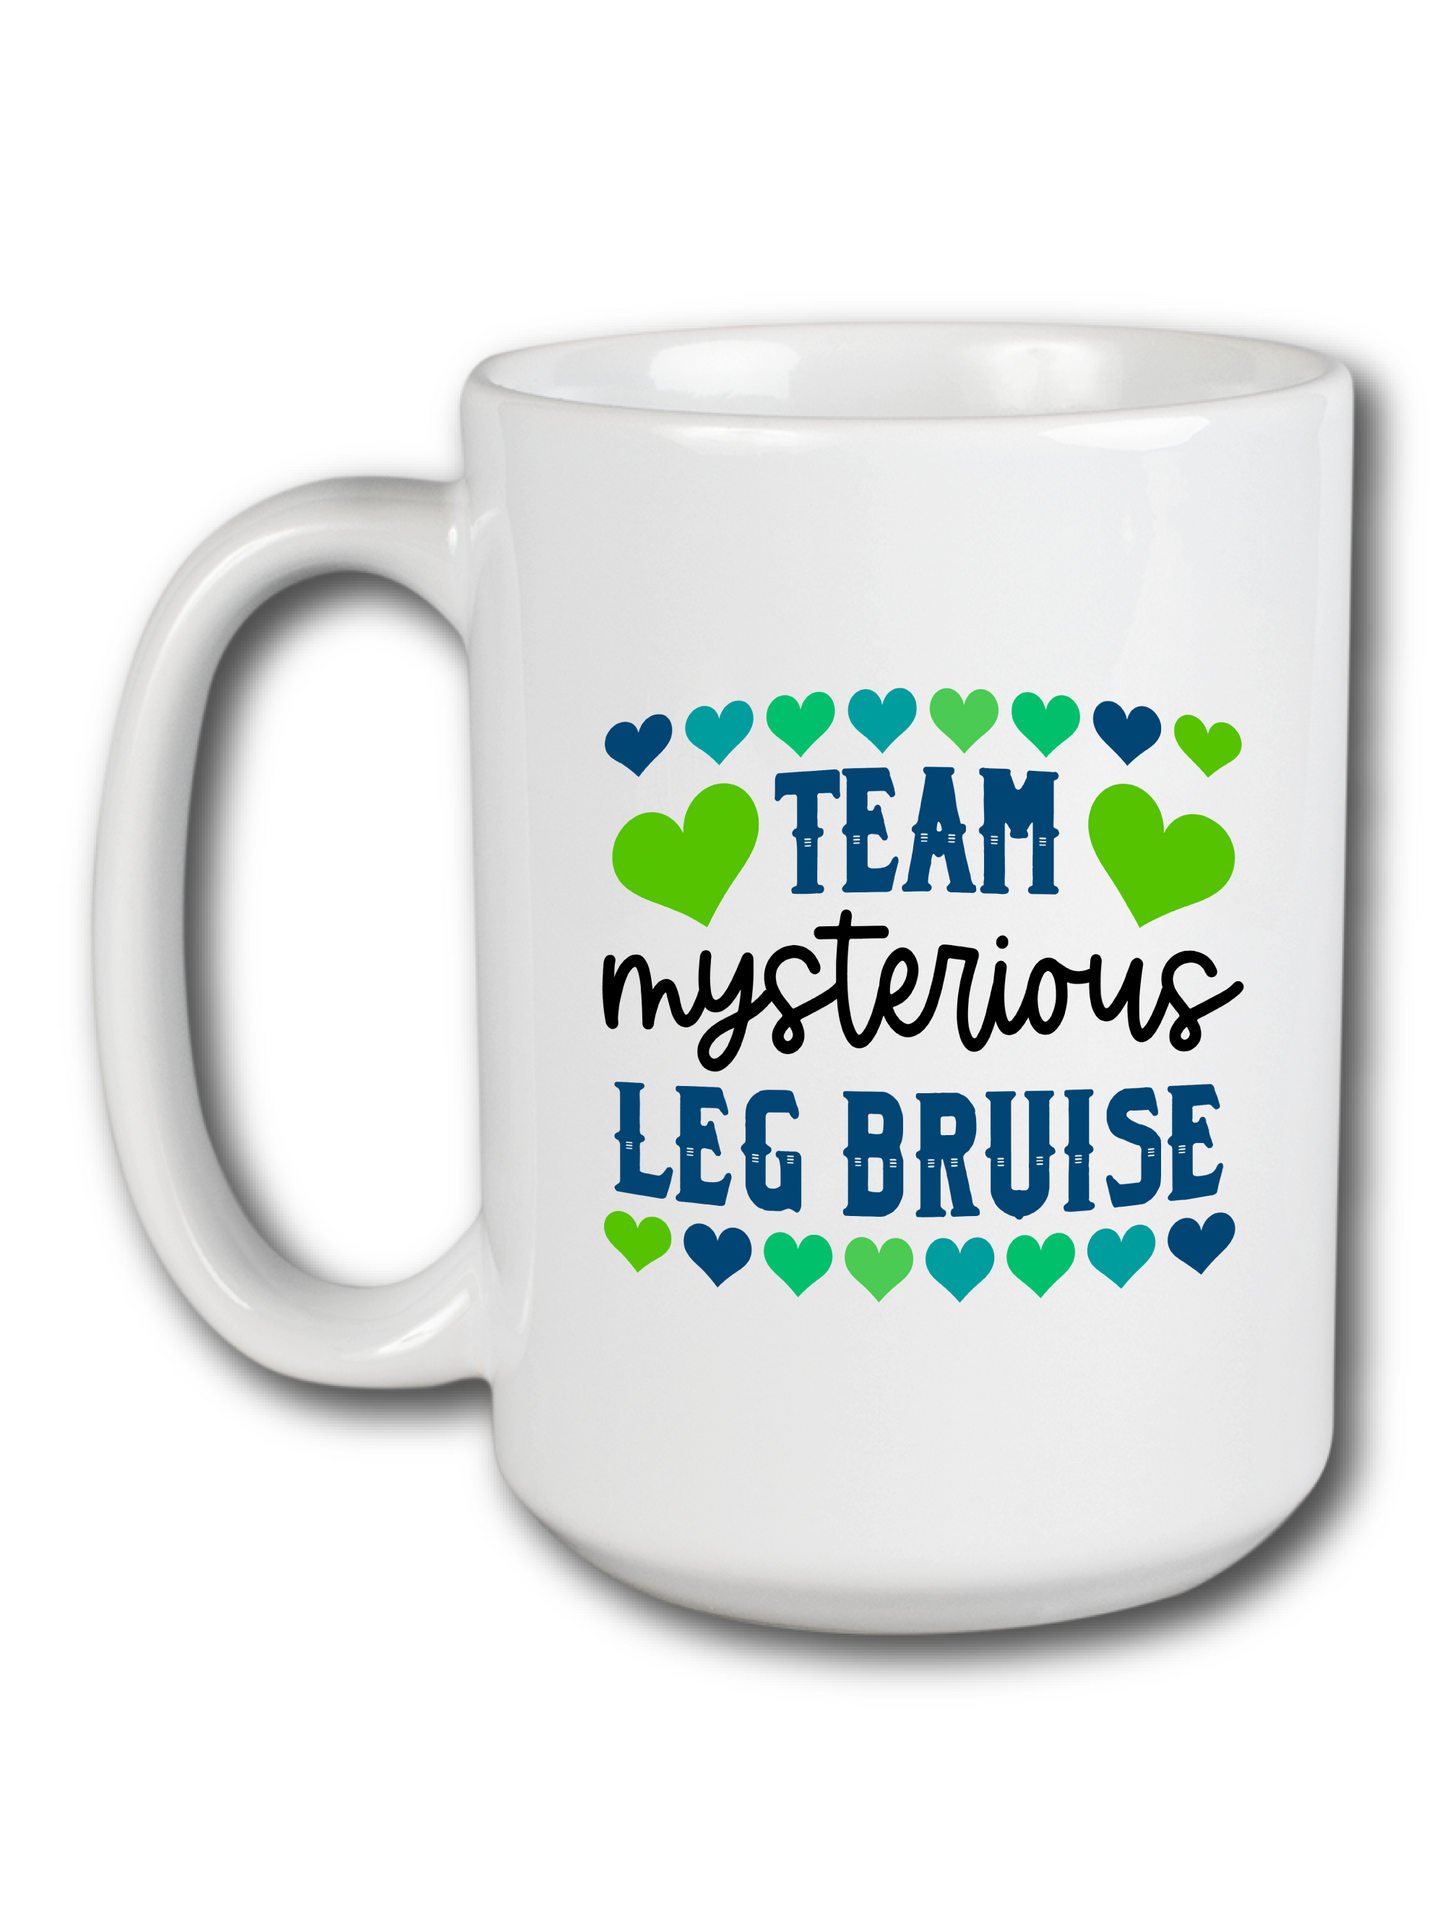 Team Mysterious Leg Bruise Mug